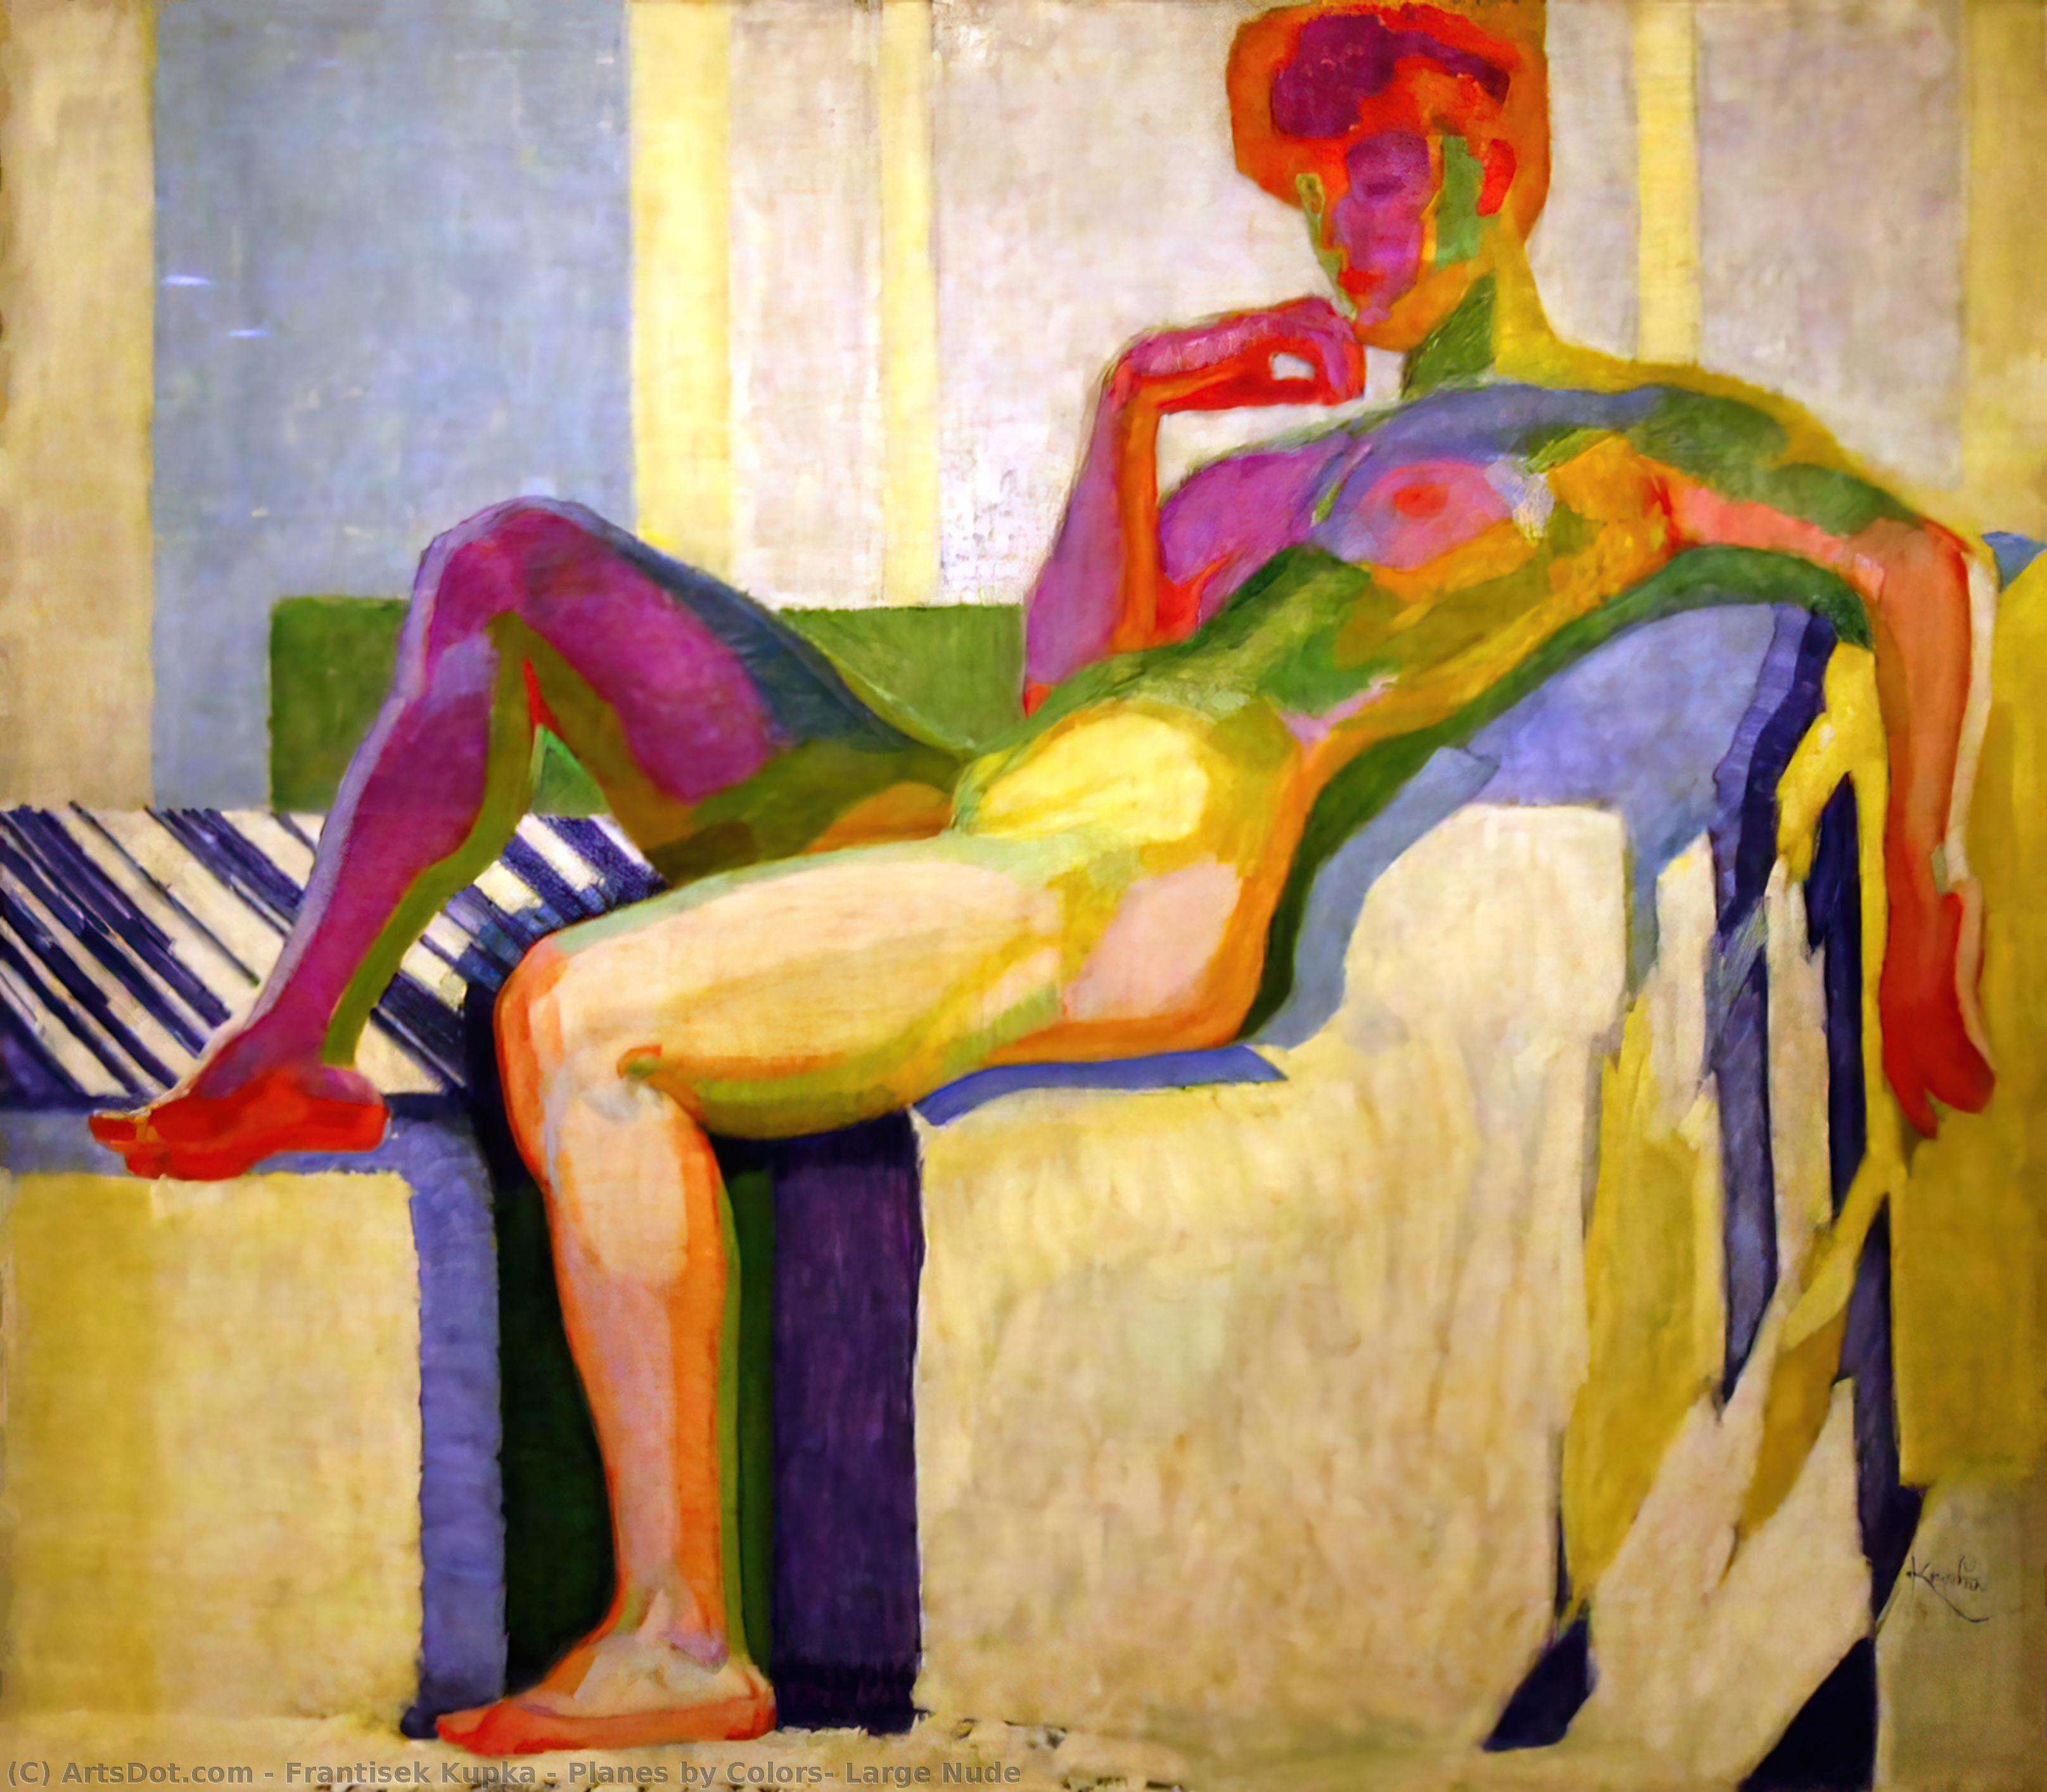 Wikioo.org - สารานุกรมวิจิตรศิลป์ - จิตรกรรม Frantisek Kupka - Planes by Colors, Large Nude